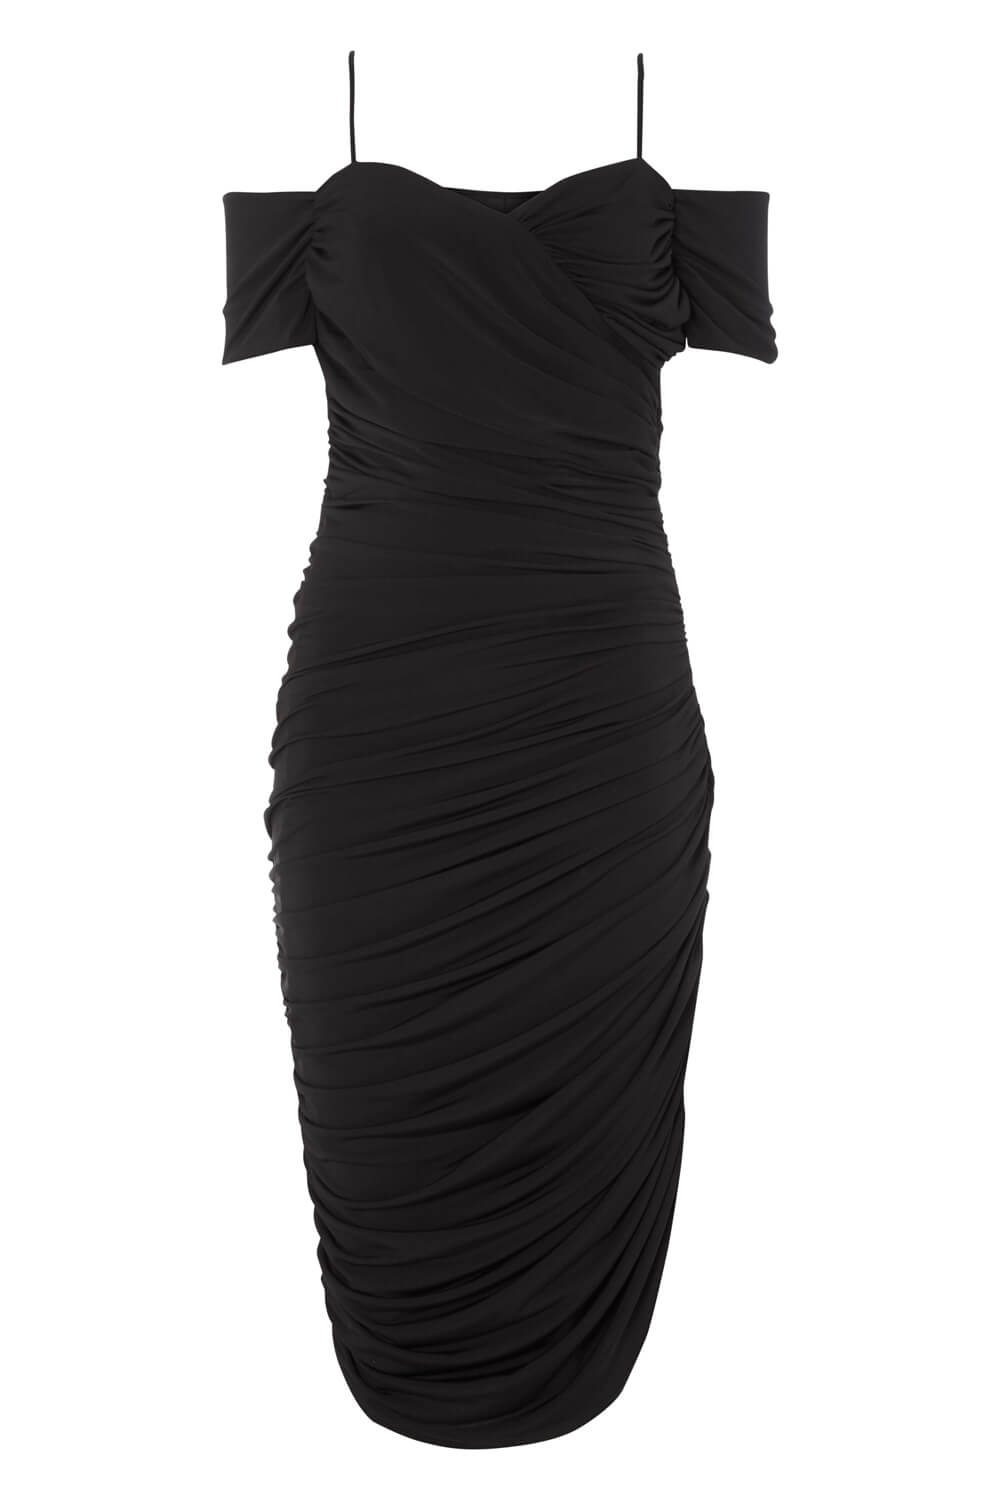 Black Off the Shoulder Ruched Waist Dress, Image 4 of 4